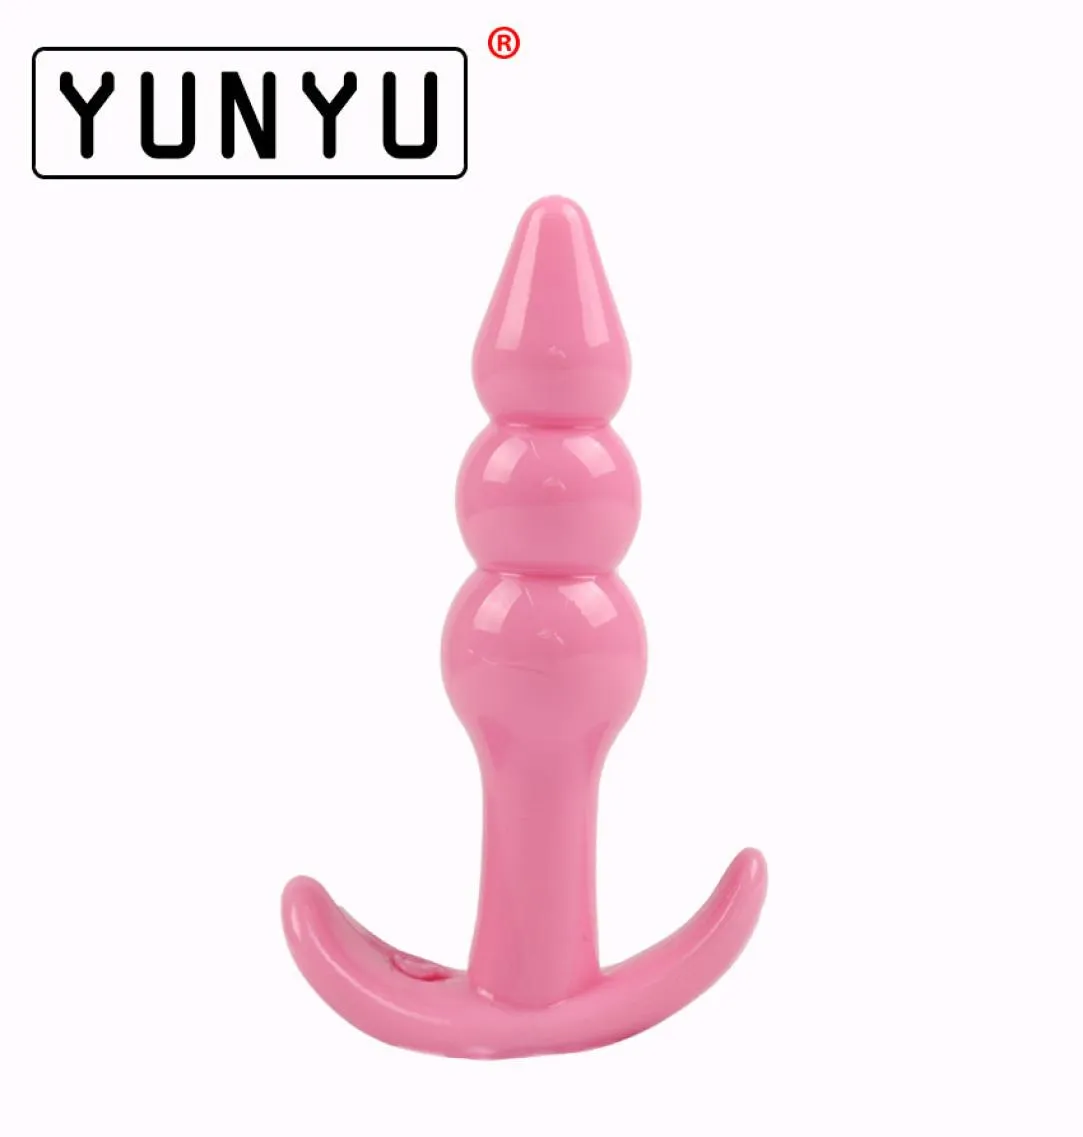 1 pz plug anale gelatina giocattoli vera sensazione di pelle giocattoli adulti del sesso prodotti del sesso butt plug giocattoli per uomini donne 2 stile C181127016391321